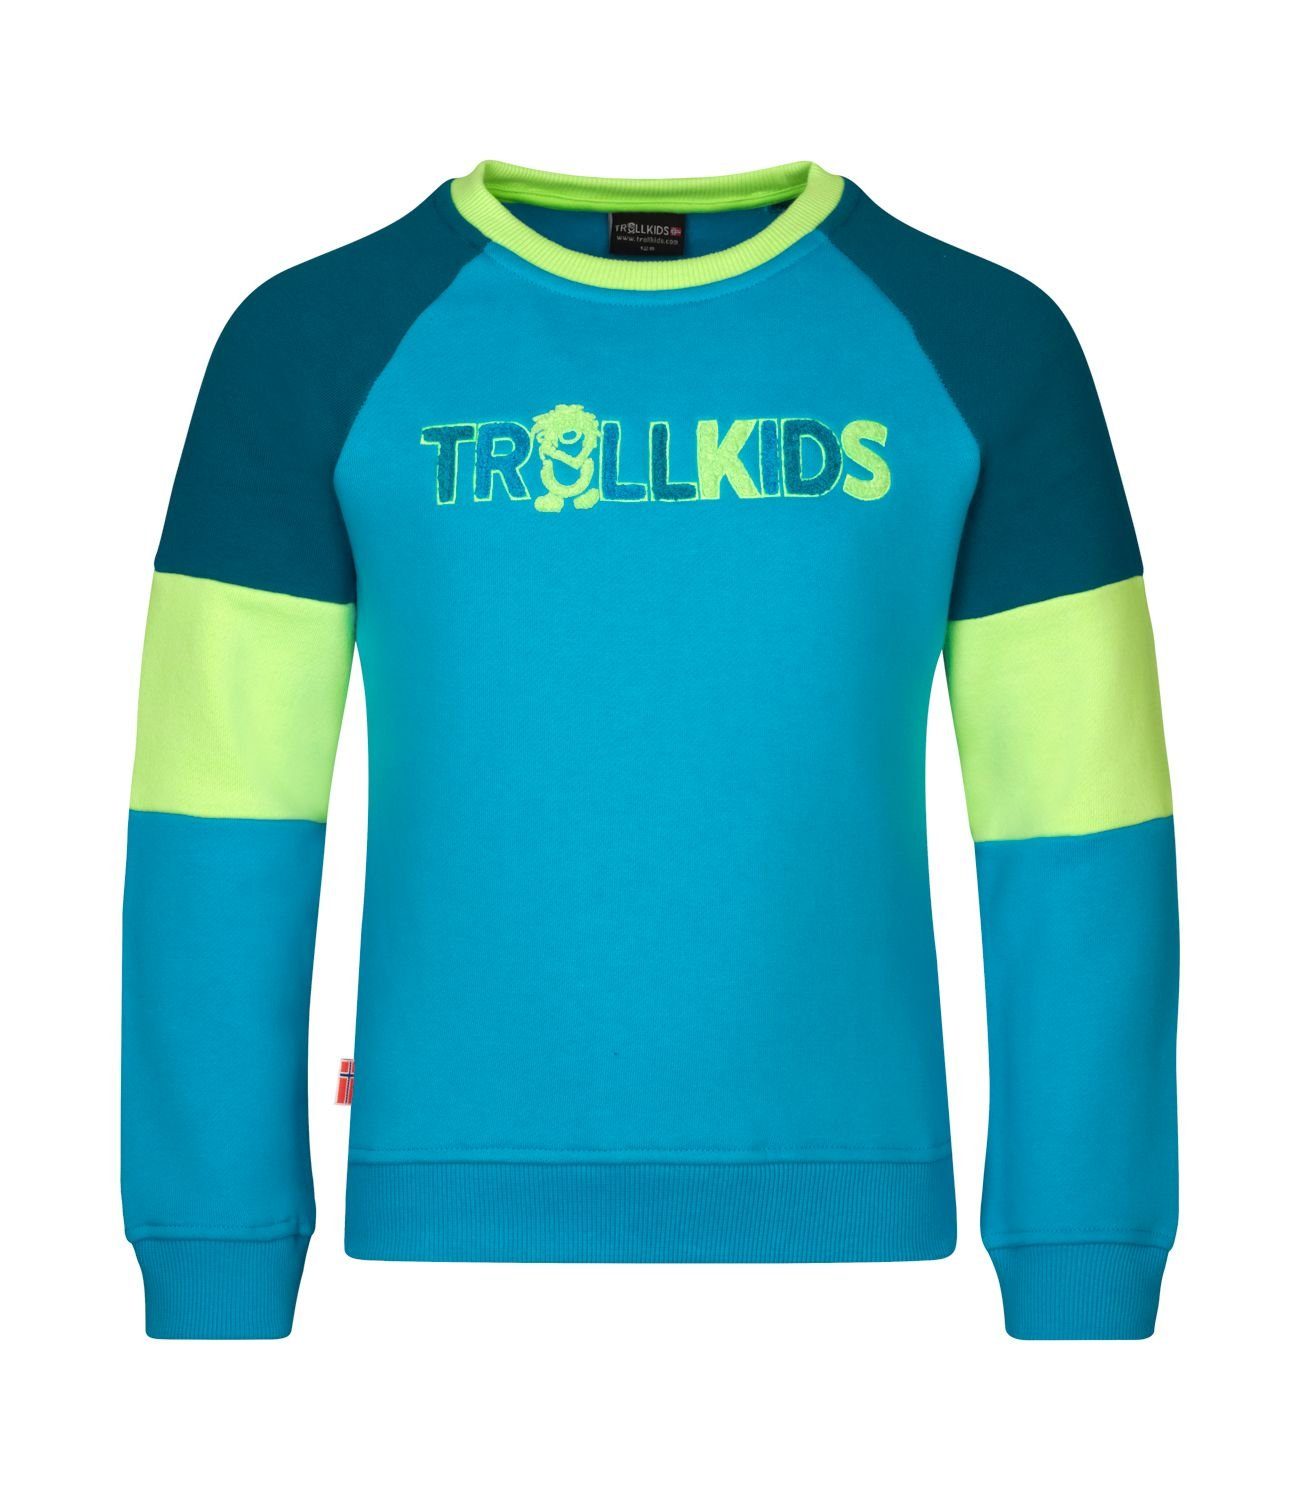 Trollfjord Vivid-Blau/Limette/Dunkelblau TROLLKIDS Sweatshirt